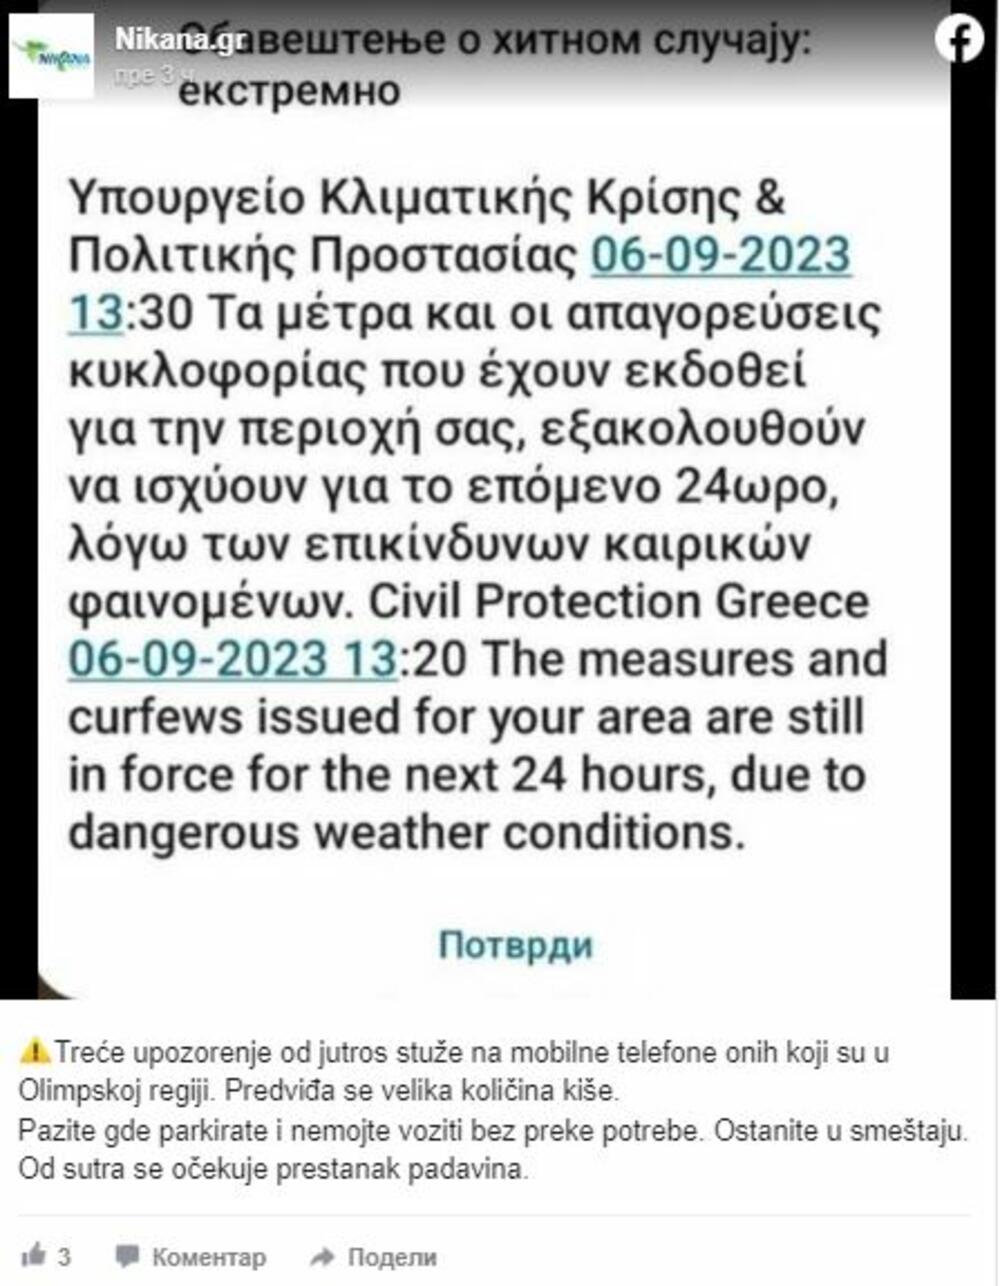 Grčka, upozorenje